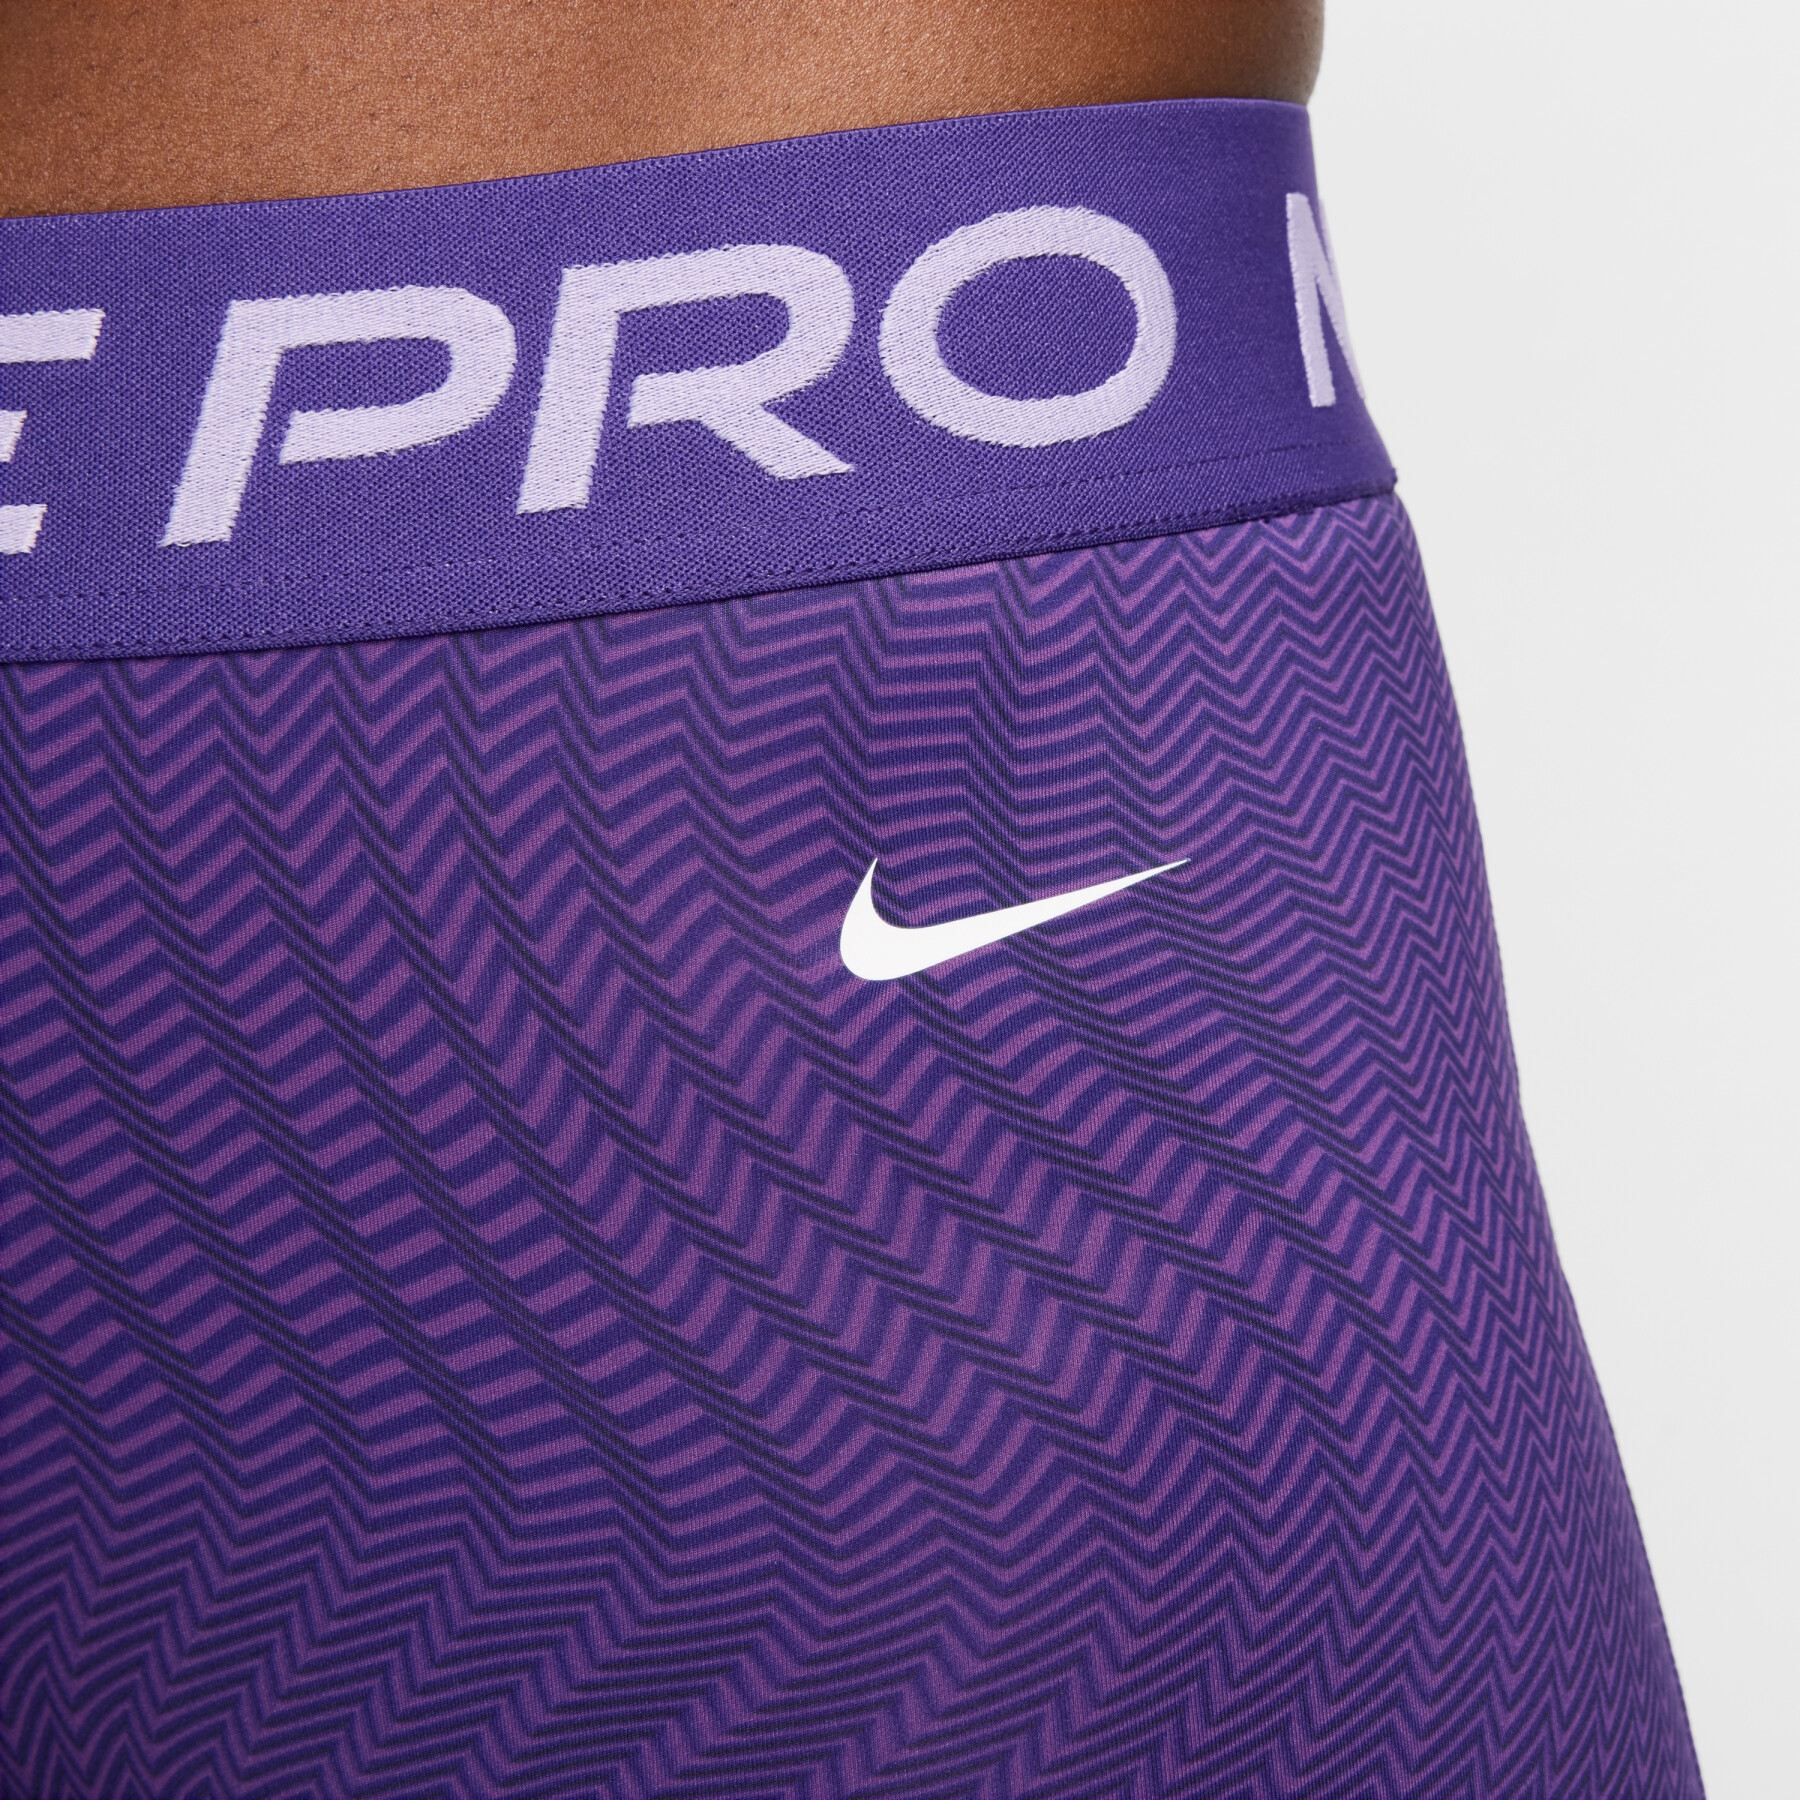 Bedrukte damesshort Nike Pro